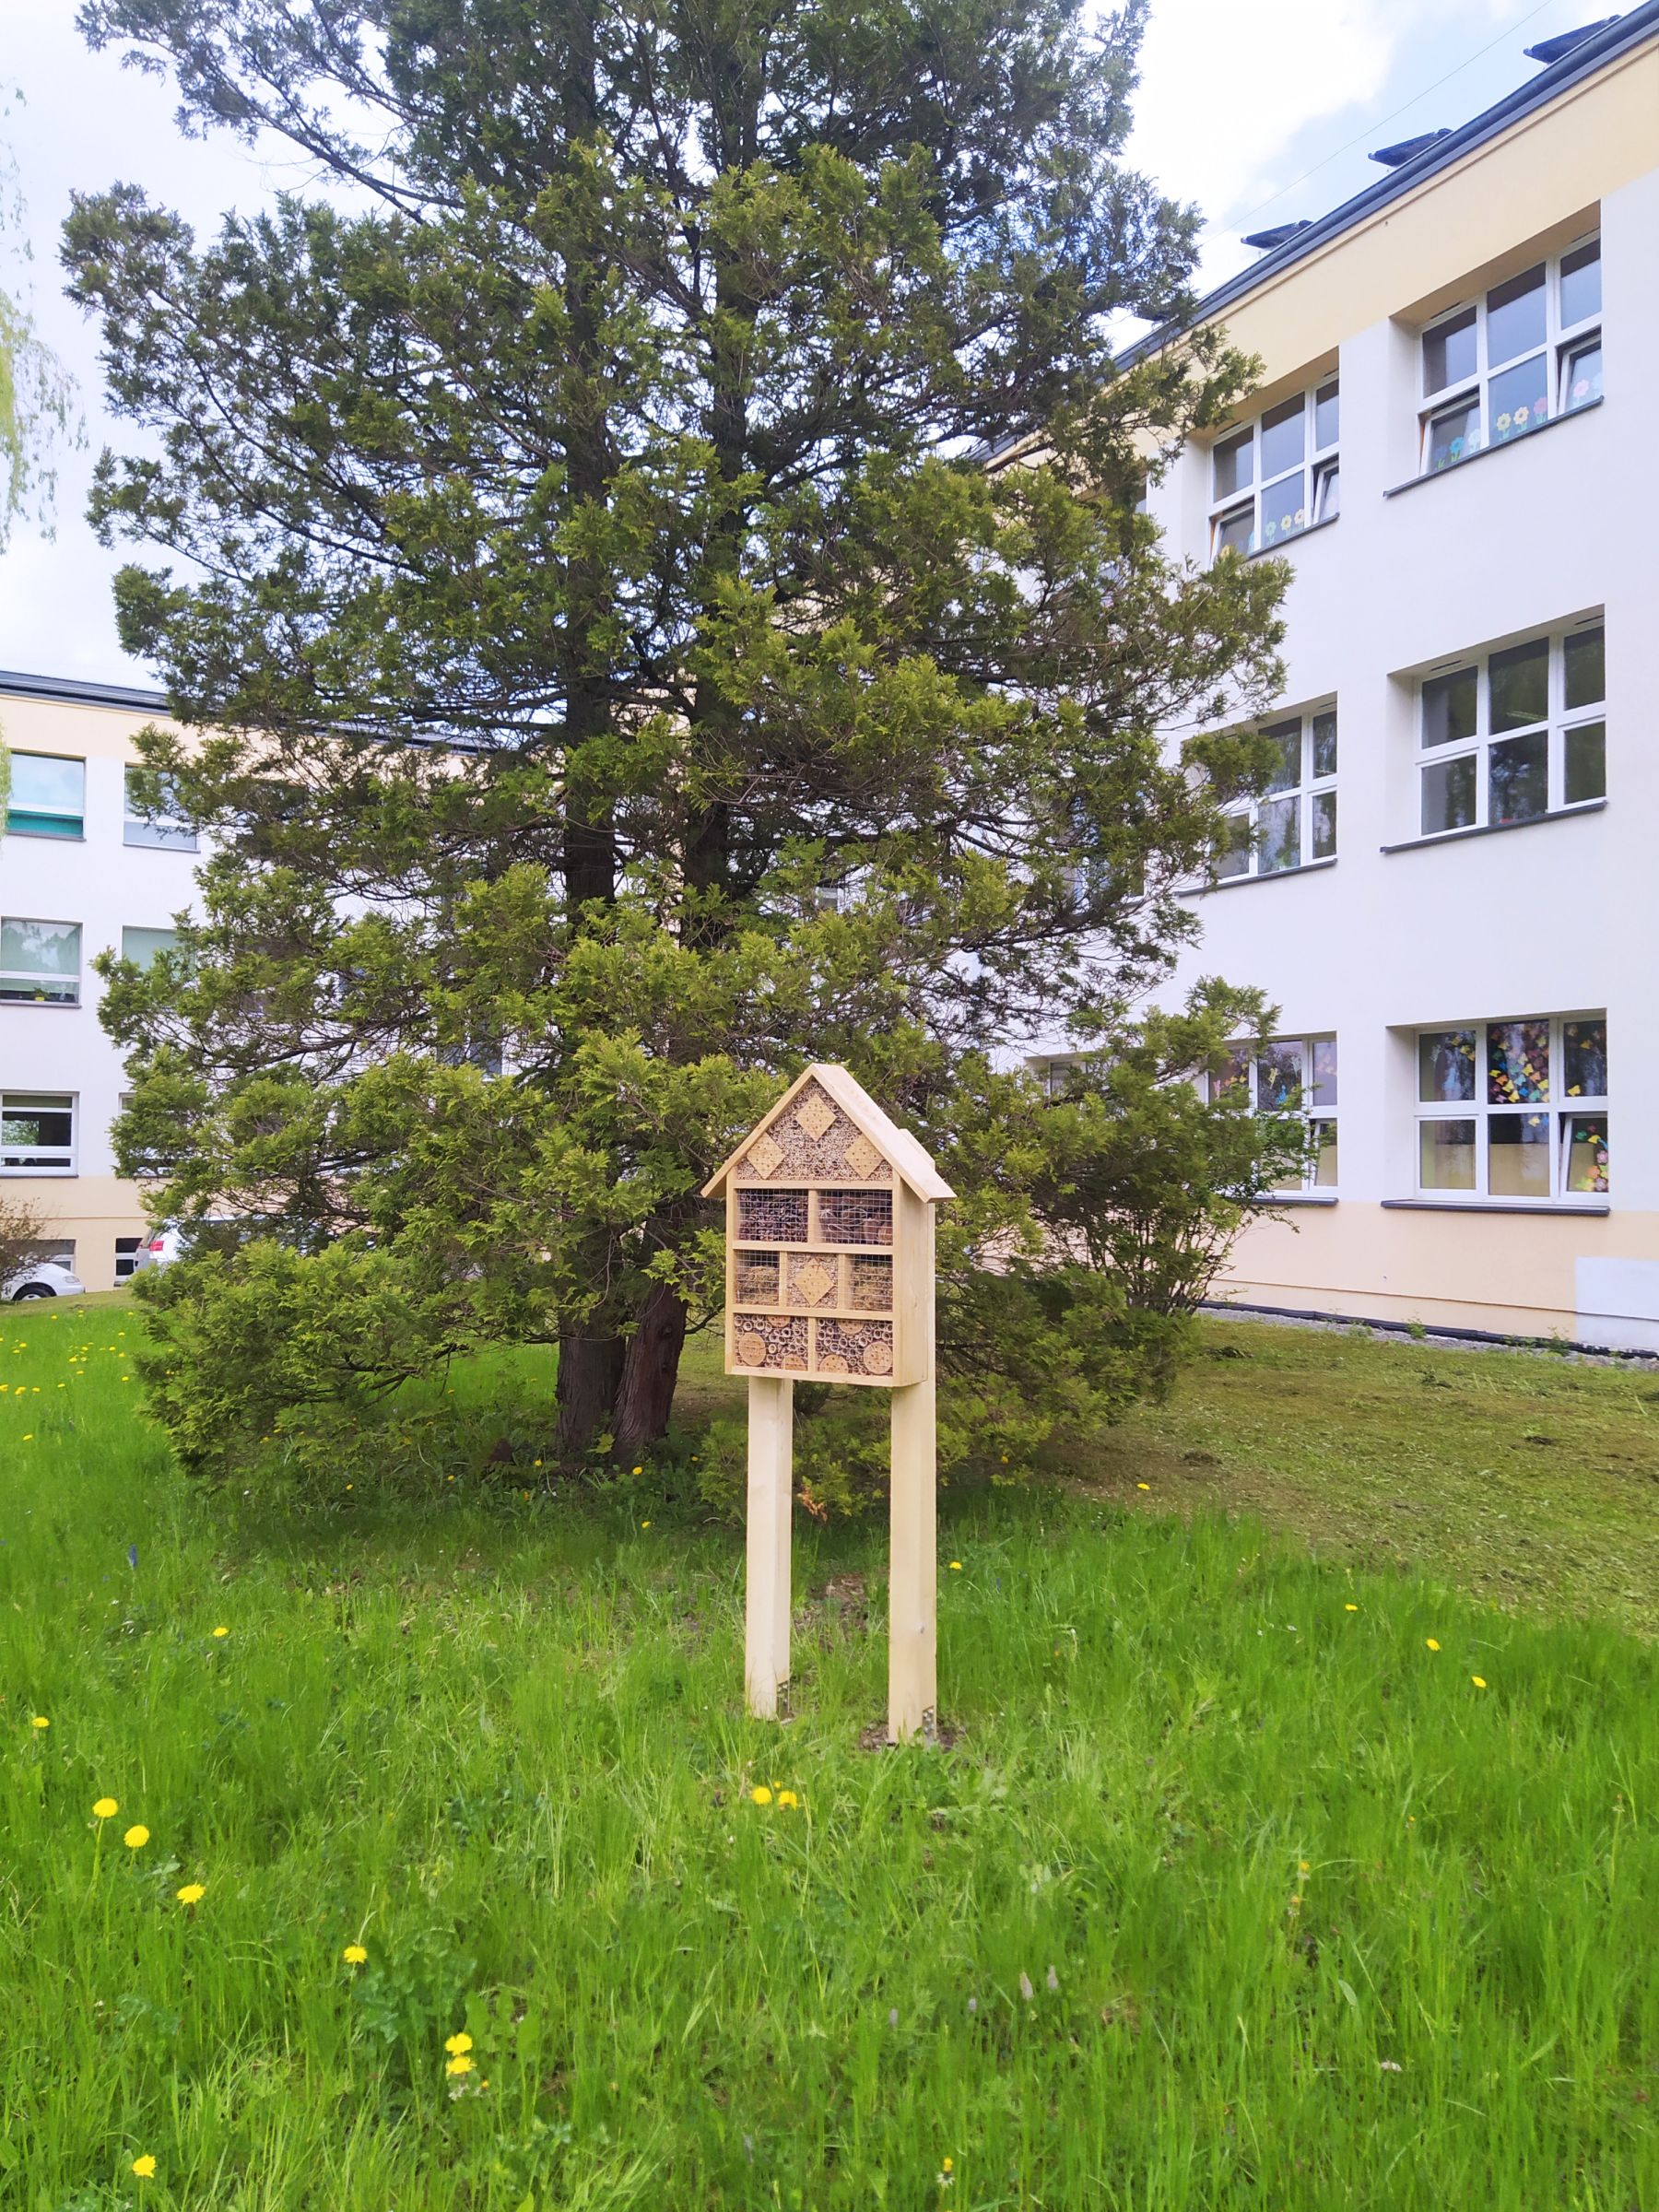 Drewniany domek dla owadów stojący na trawniku, przed dużym drzewem. Z tyłu budynek szkoły.